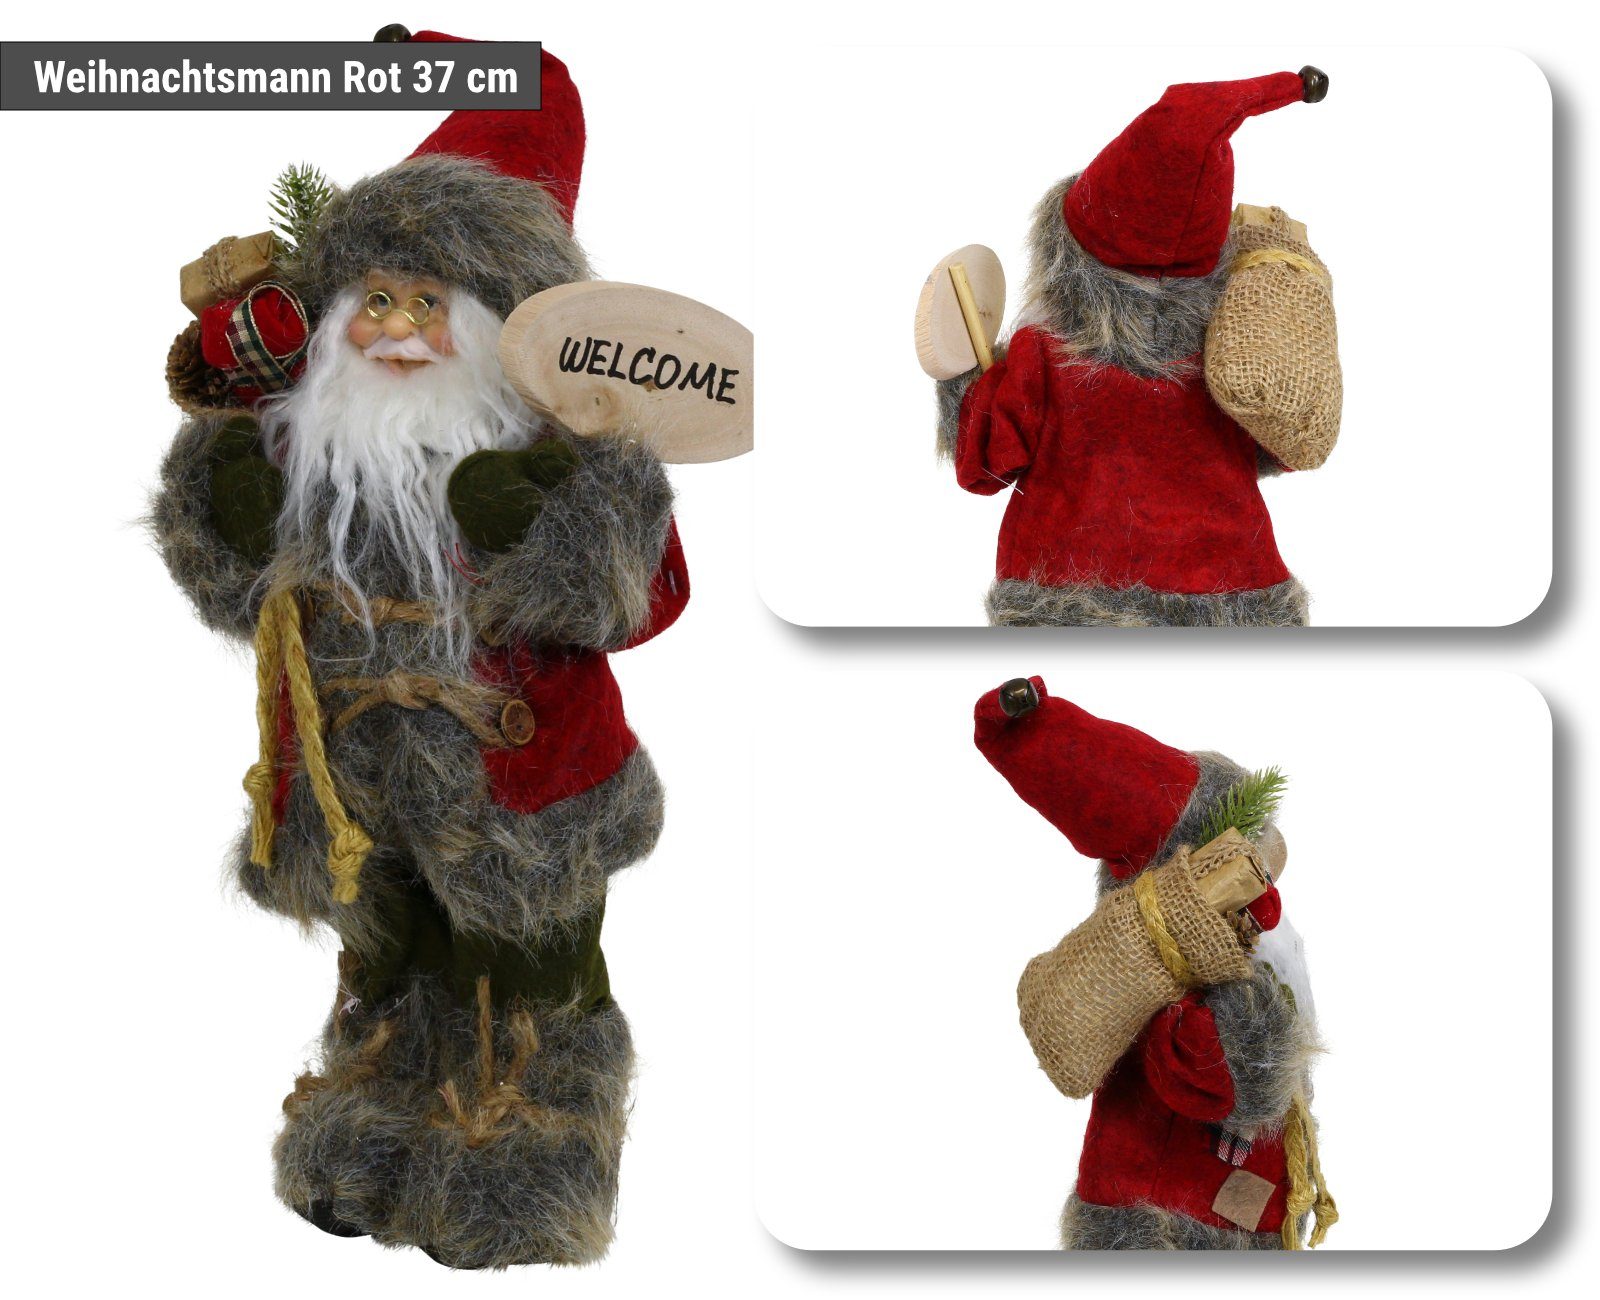 HAGO Weihnachtsfigur Weihnachtsmann Nikolaus Figur stehend mit Geschenkesack Weihnachtsdeko rot